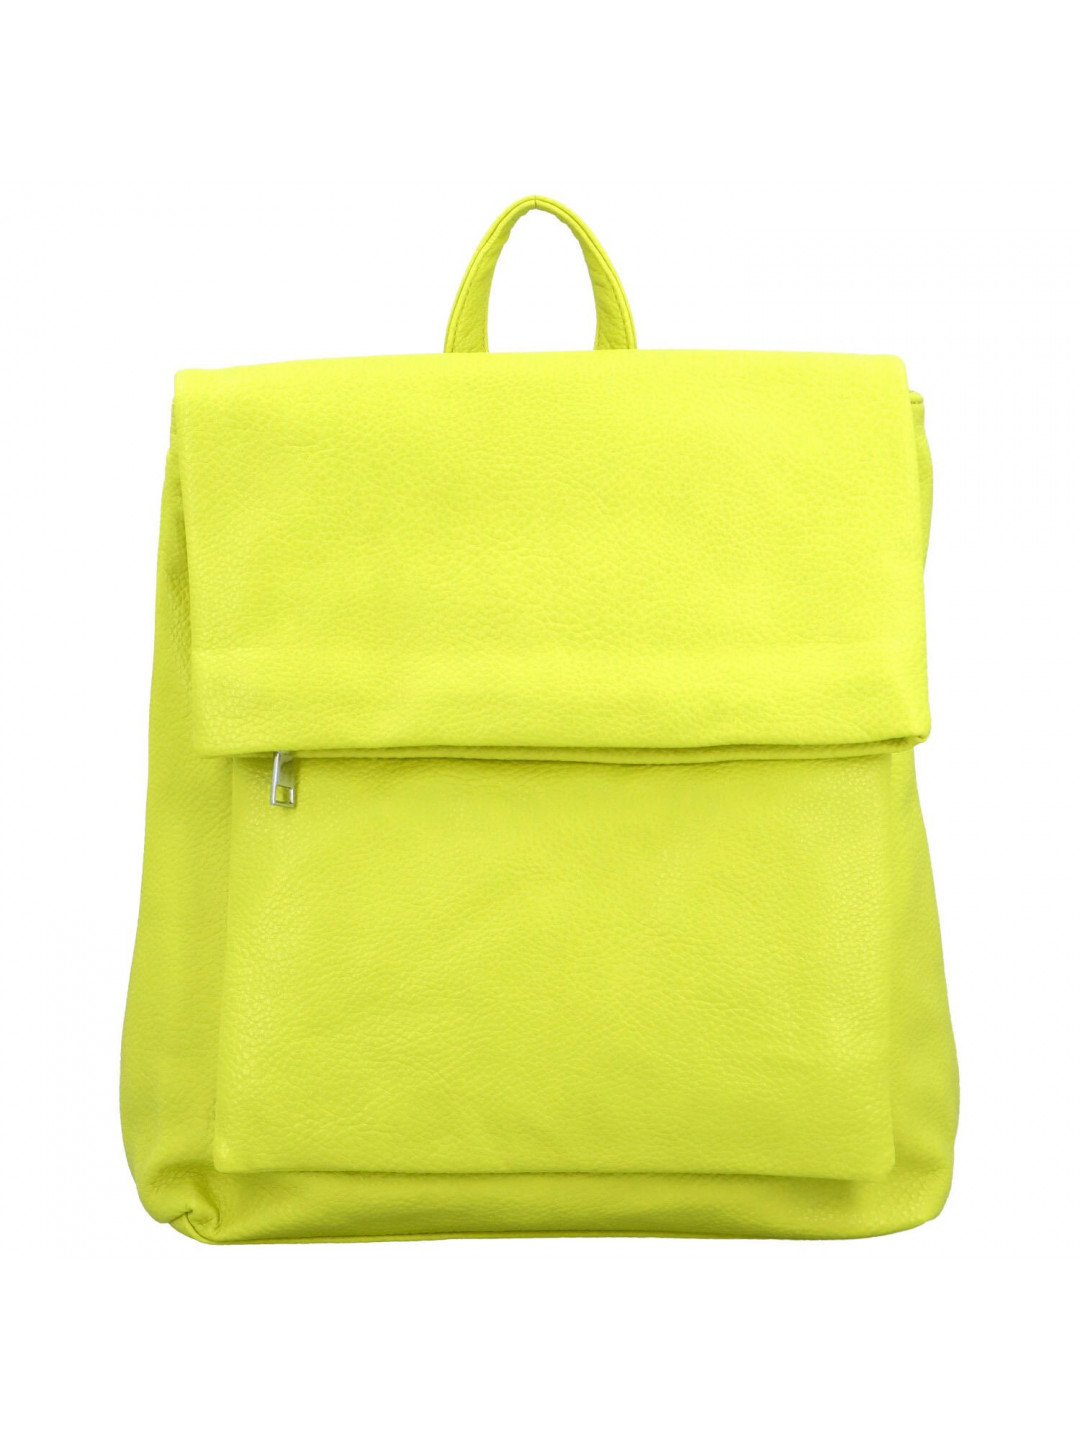 Dámský kabelko batoh žlutý – Firenze Noland